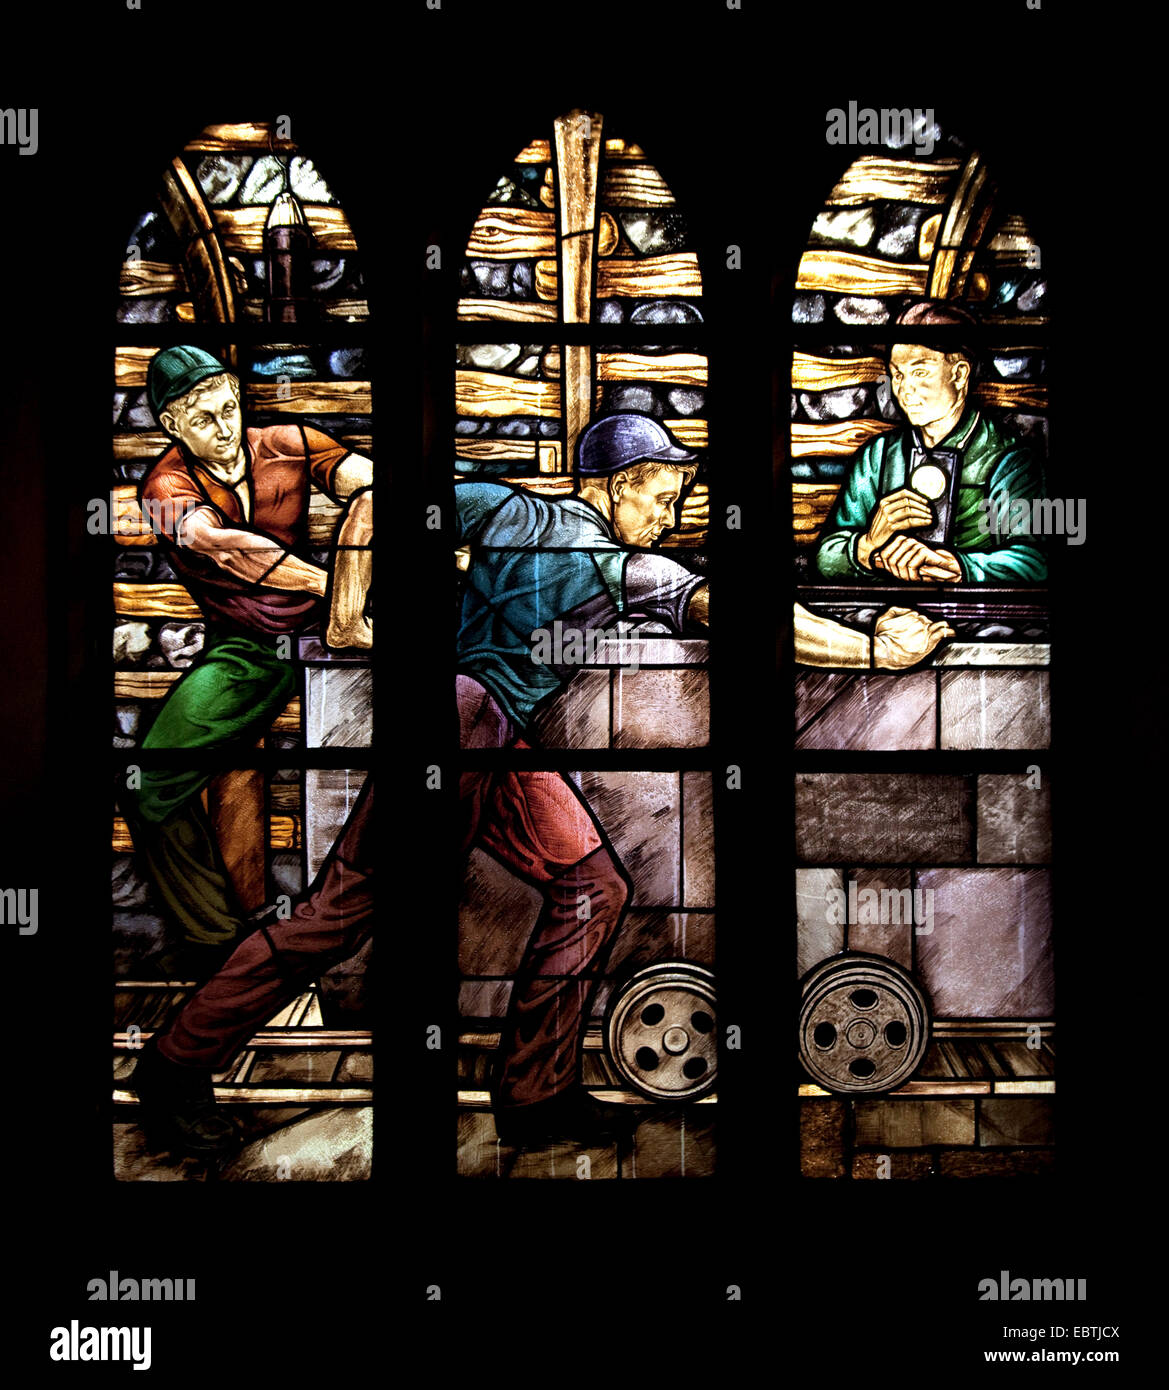 bunte Fenster mit Kohle Bergmann Thema der St. Vinzentius Kirche,  Deutschland, Nordrhein-Westfalen, Ruhrgebiet, Bochum Stockfotografie - Alamy